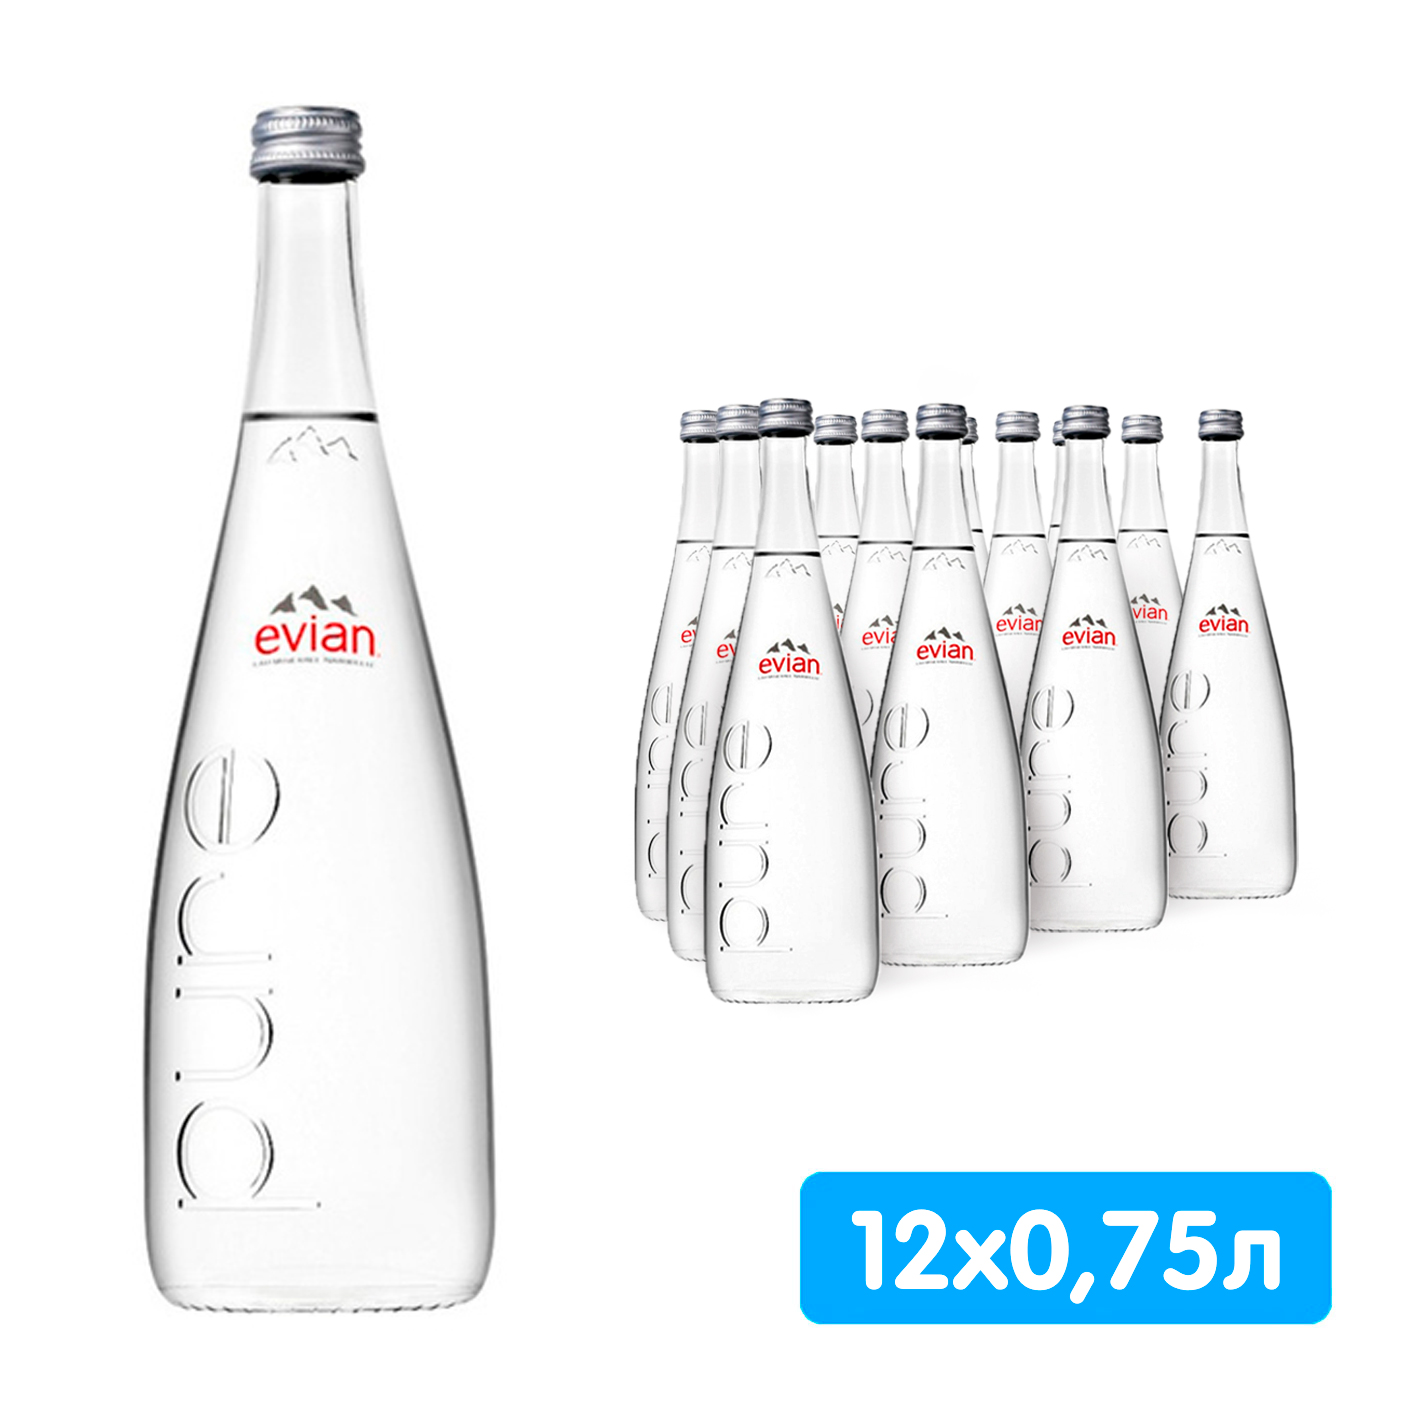 Вода Evian 0.75 литра, без газа, стекло, 12 шт. в уп Вода Evian 0.75 литра, без газа, стекло, 12 шт. в уп. - фото 1